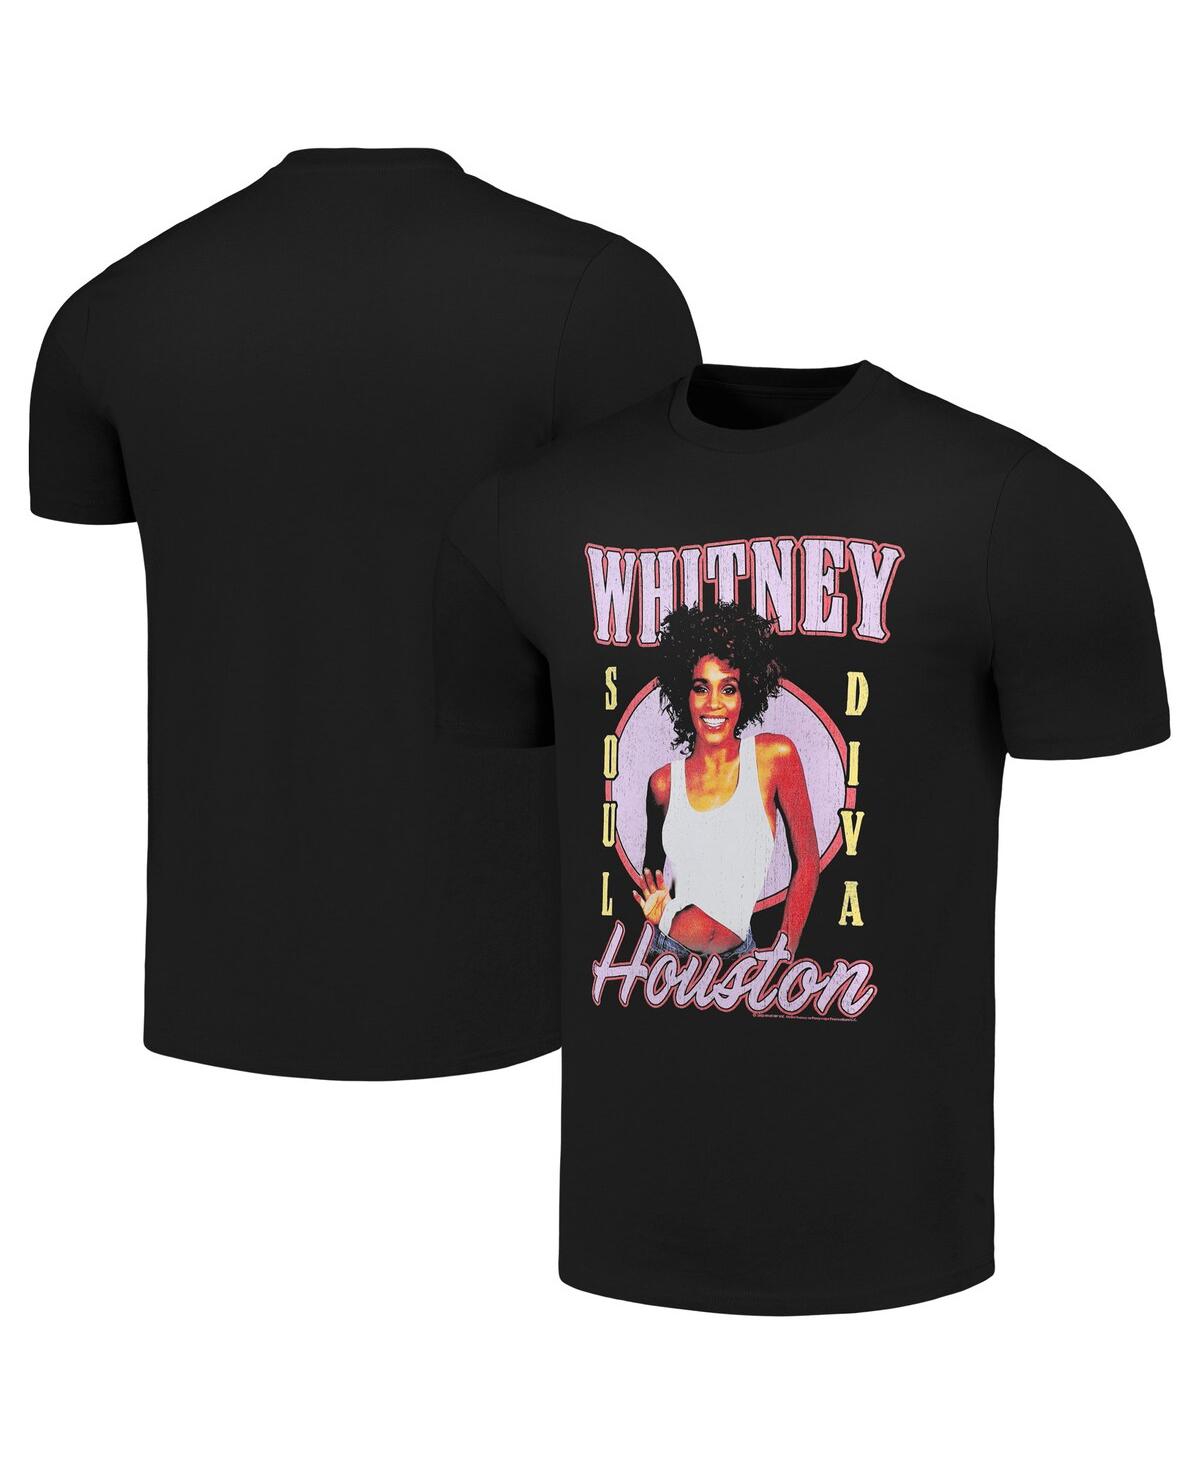 Men's Black Whitney Houston Soul Diva T-shirt - Black